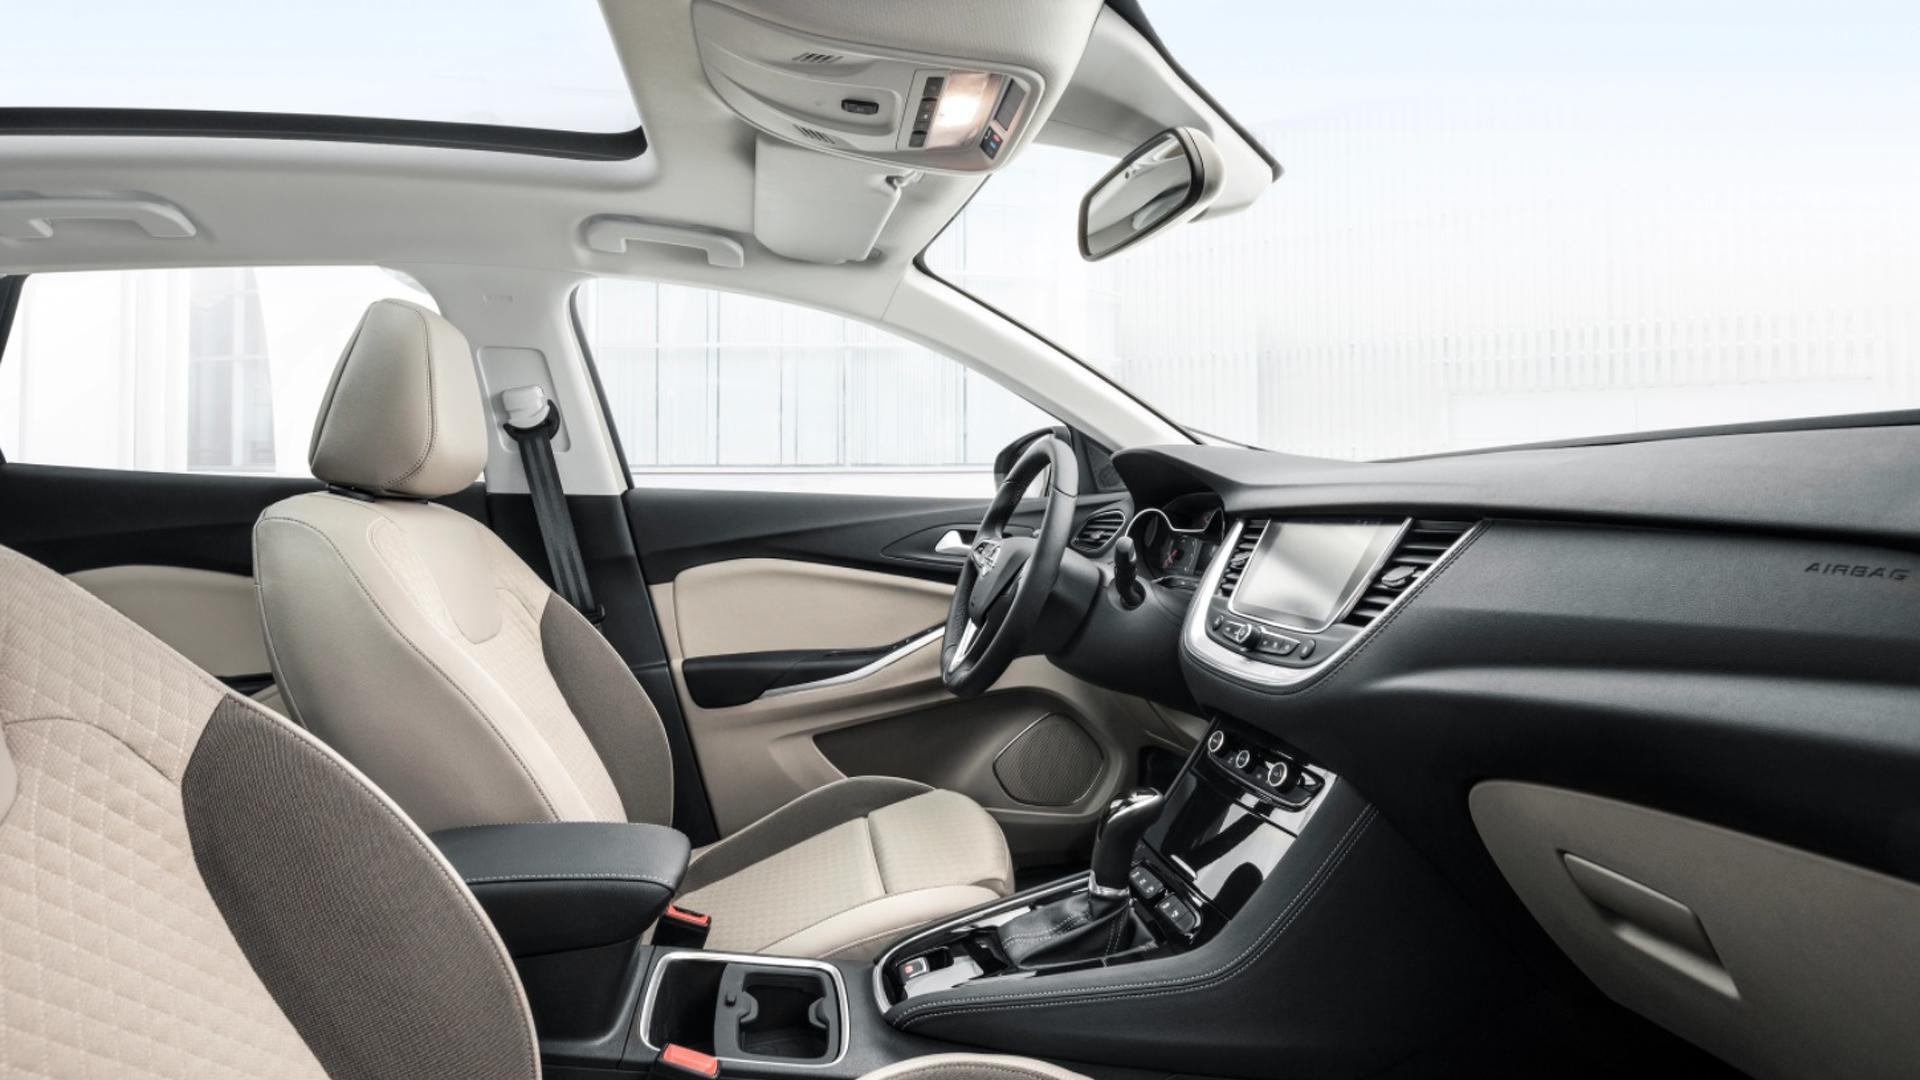 Opel Grandland X interior - Front Seats